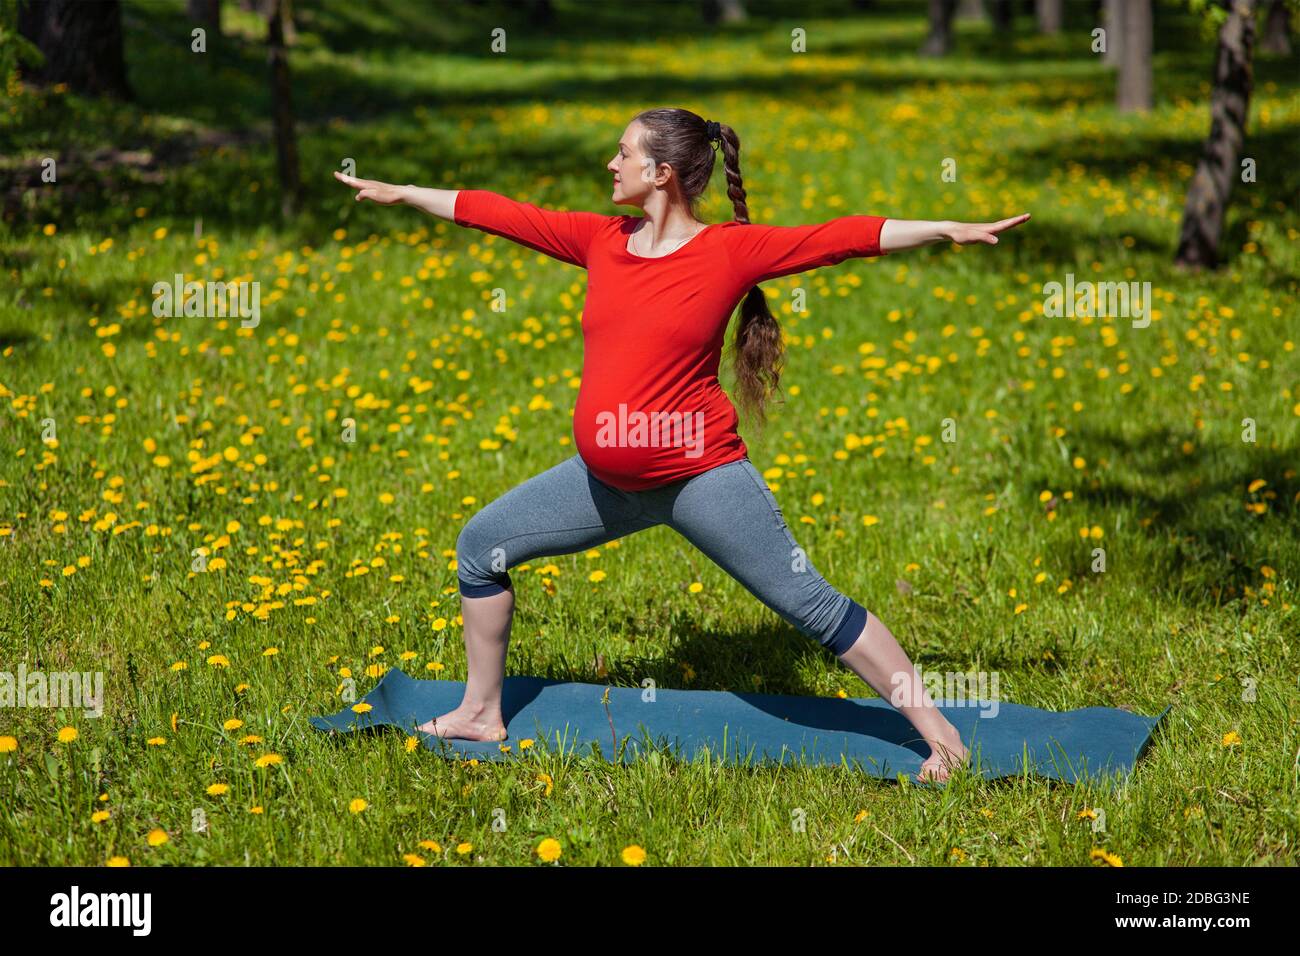 Grossesse exercice de yoga - femme enceinte faisant du yoga asana Virabhadrasana 2 warrior posent à l'extérieur sur l'herbe en été Banque D'Images